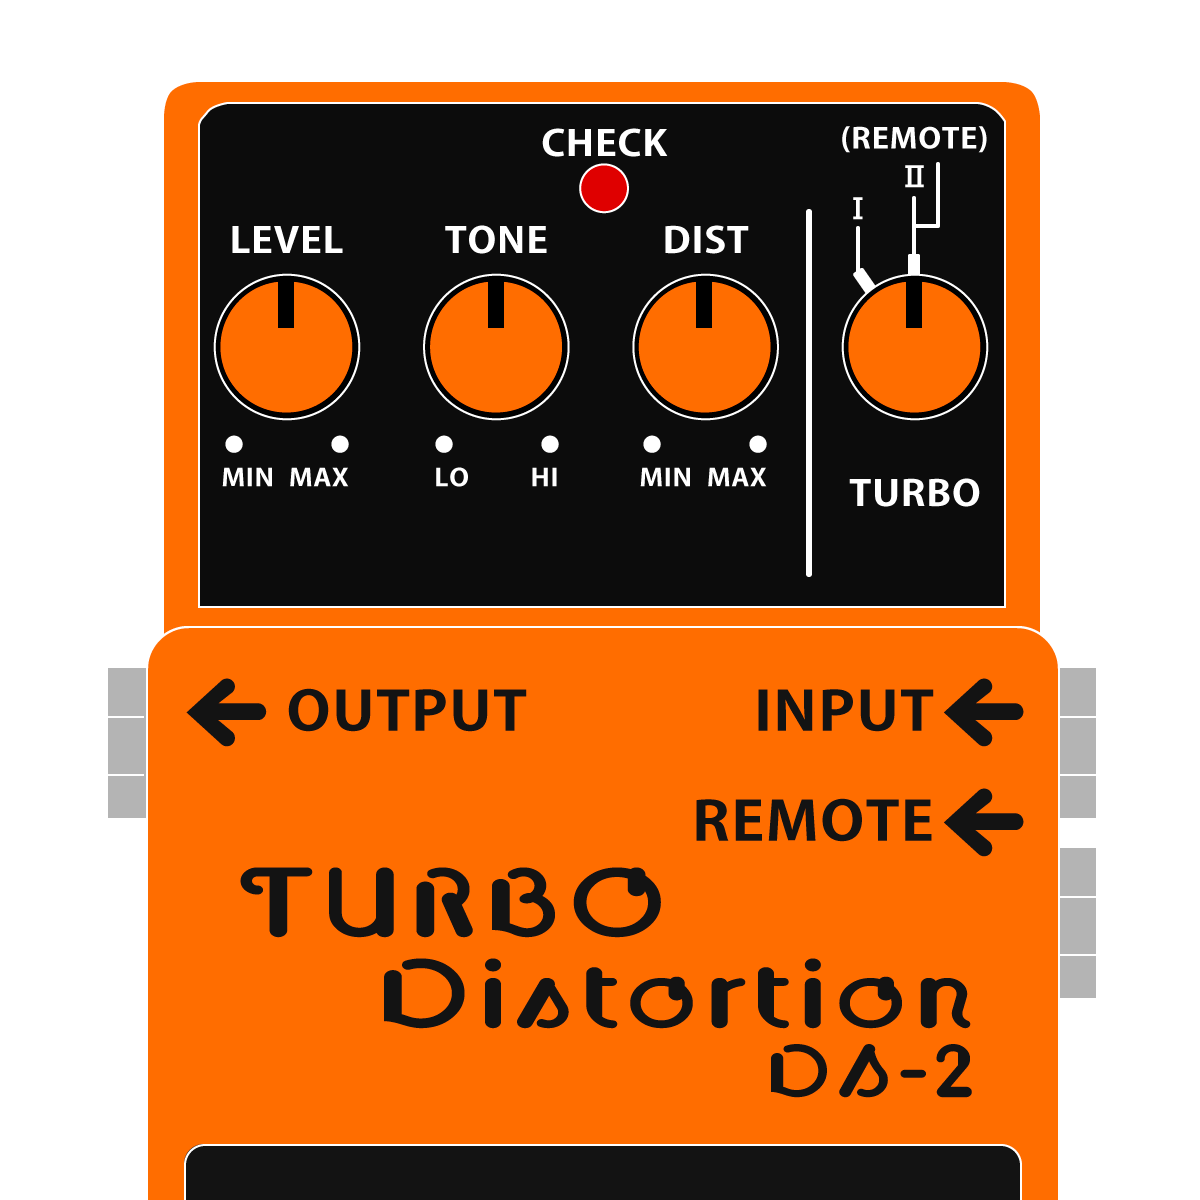 DS-2 TURBO Distortion（ターボディストーション） │ BOSSマニア共和国